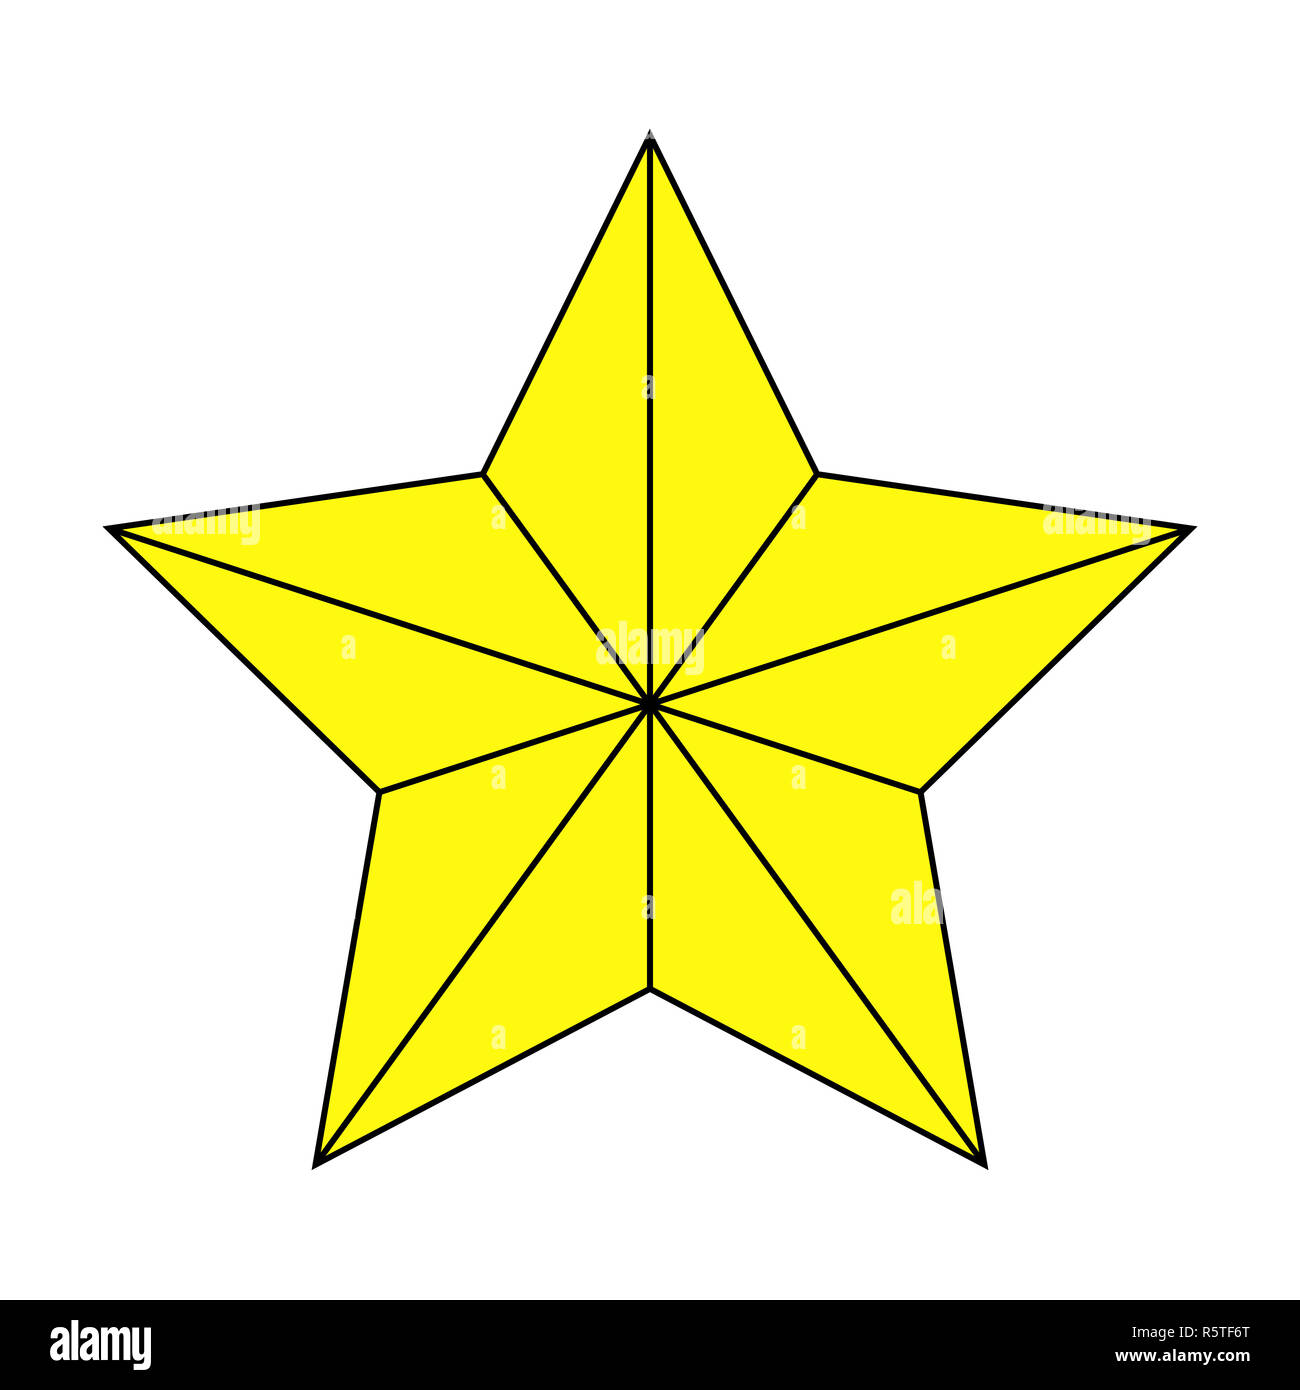 Logo ngôi sao là biểu tượng đại diện cho sức mạnh, sự nổi bật và uy tín. Nếu bạn đang tìm kiếm một công ty với chất lượng sản phẩm và dịch vụ tuyệt vời, hãy truy cập để xem những ý tưởng thiết kế logo ngôi sao độc đáo và đẳng cấp.